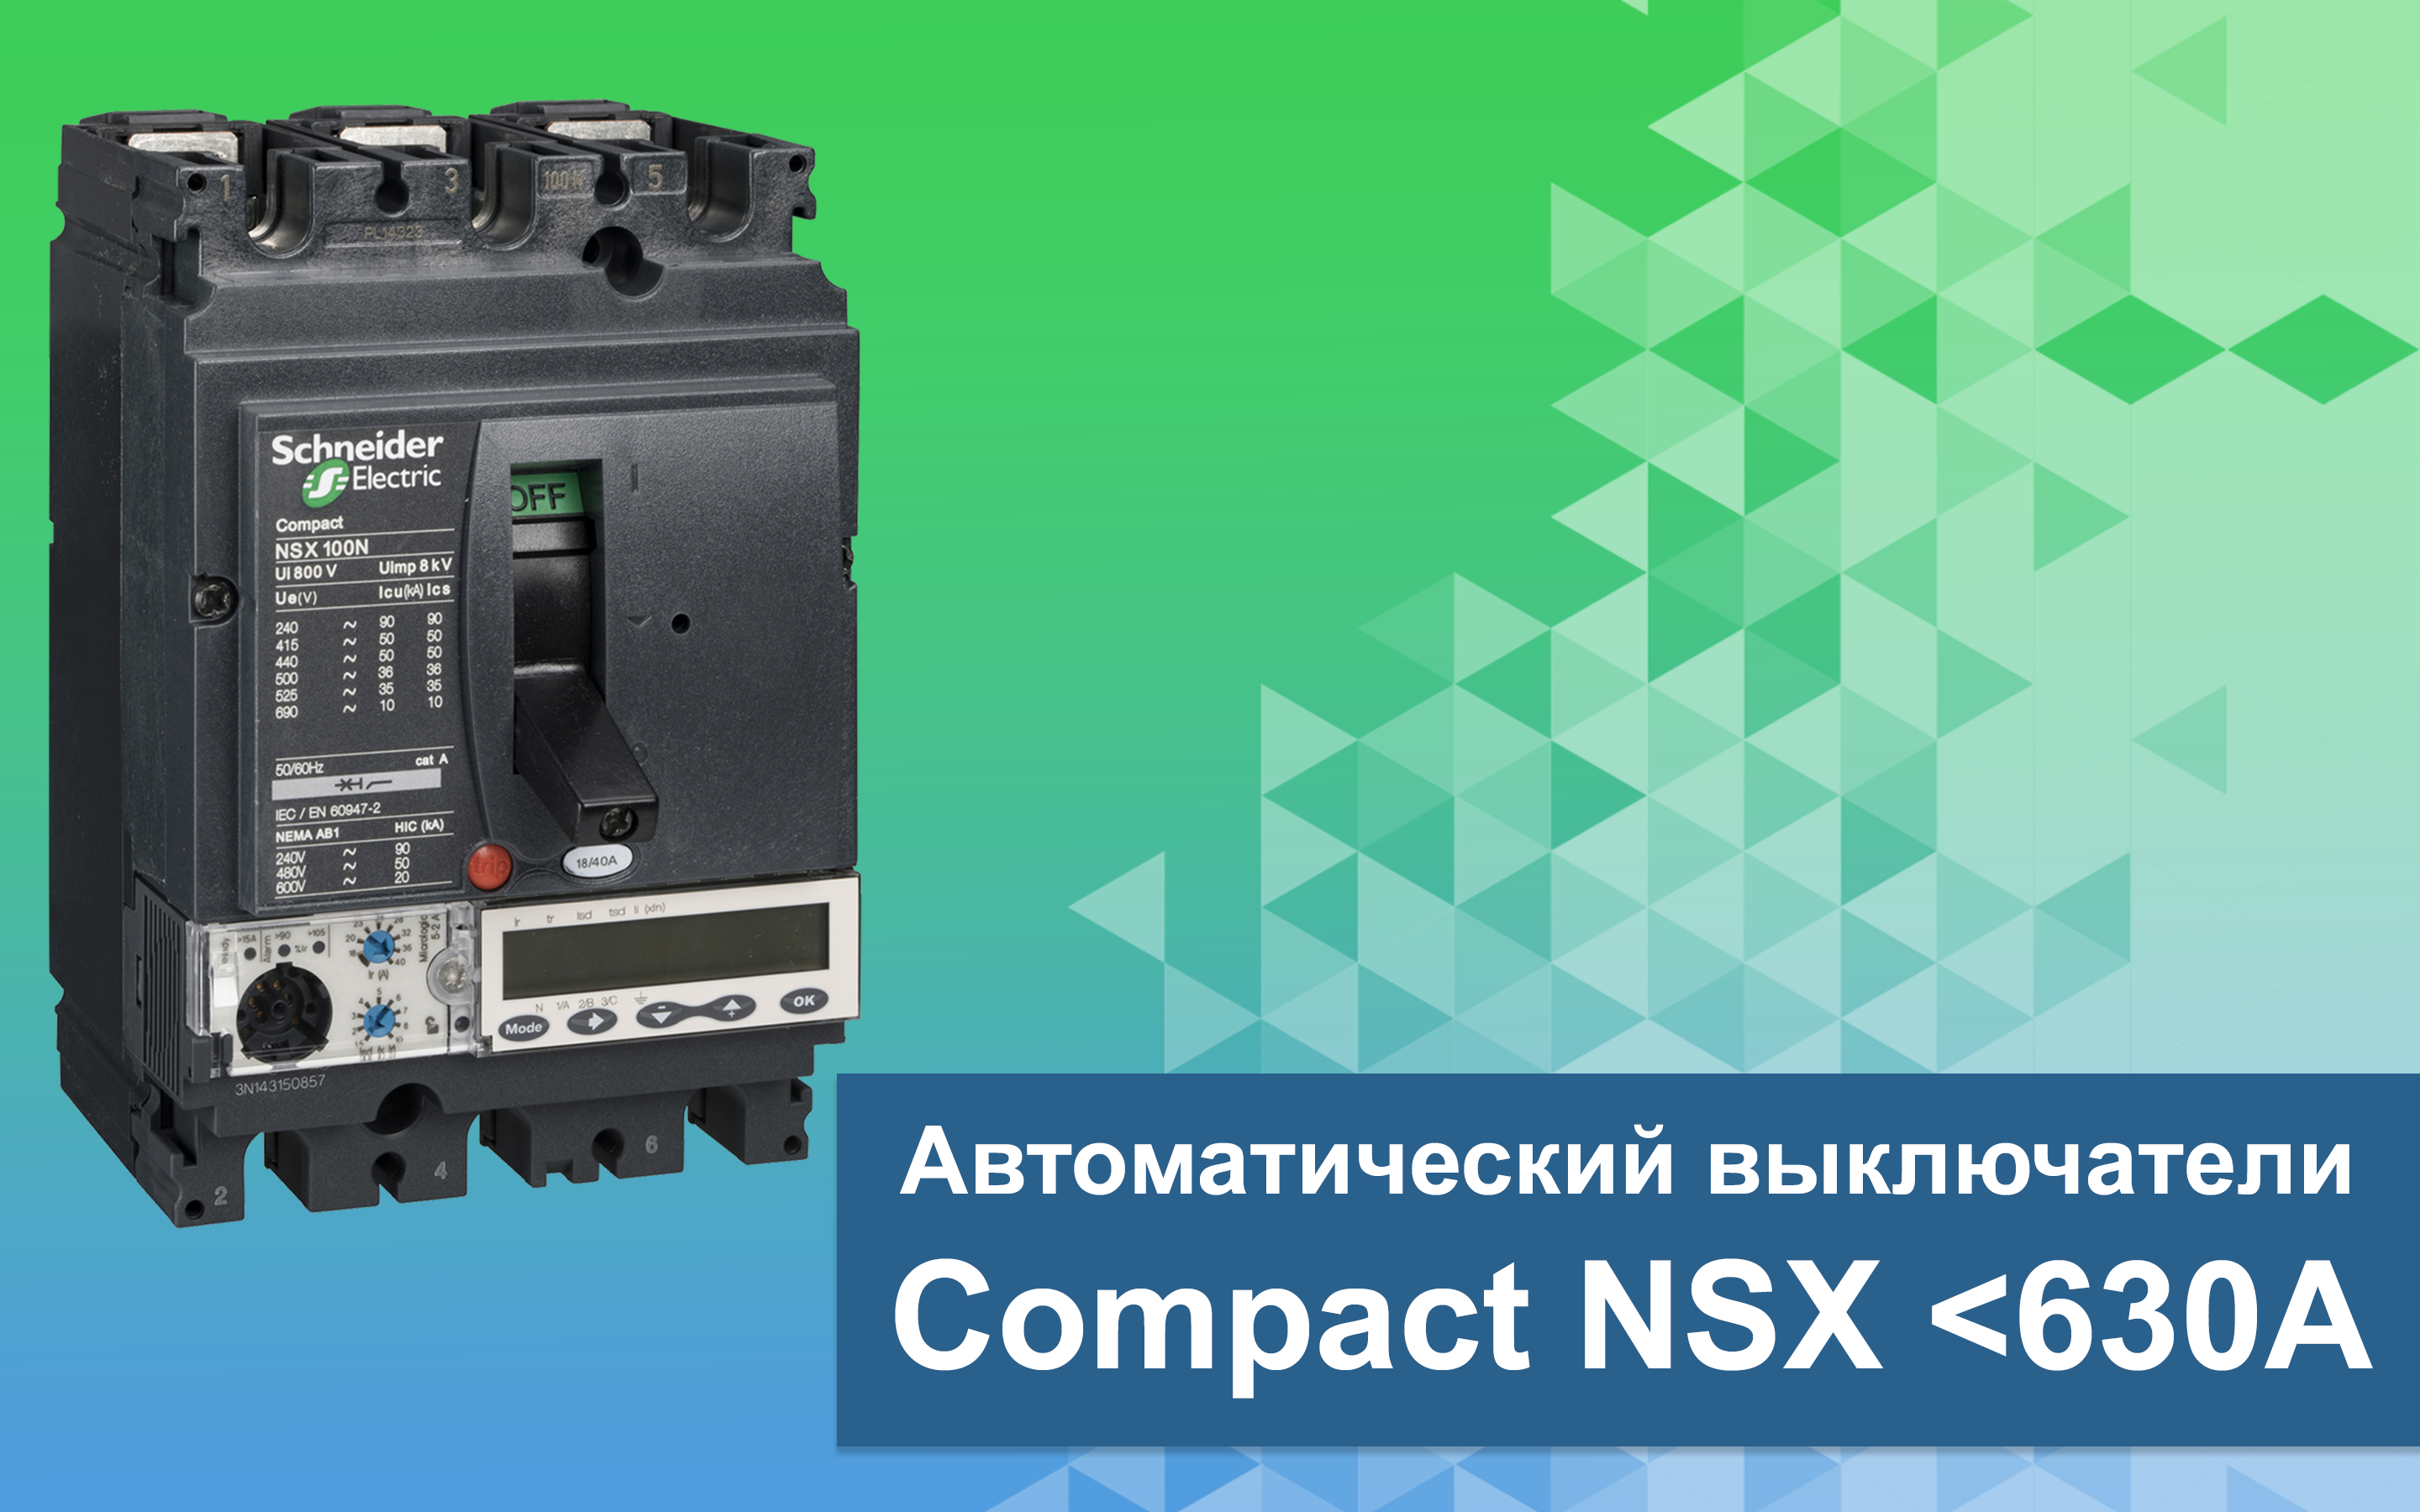 Интеллектуальные автоматические выключатели завтрашнего дня - Compact NSX 630А<